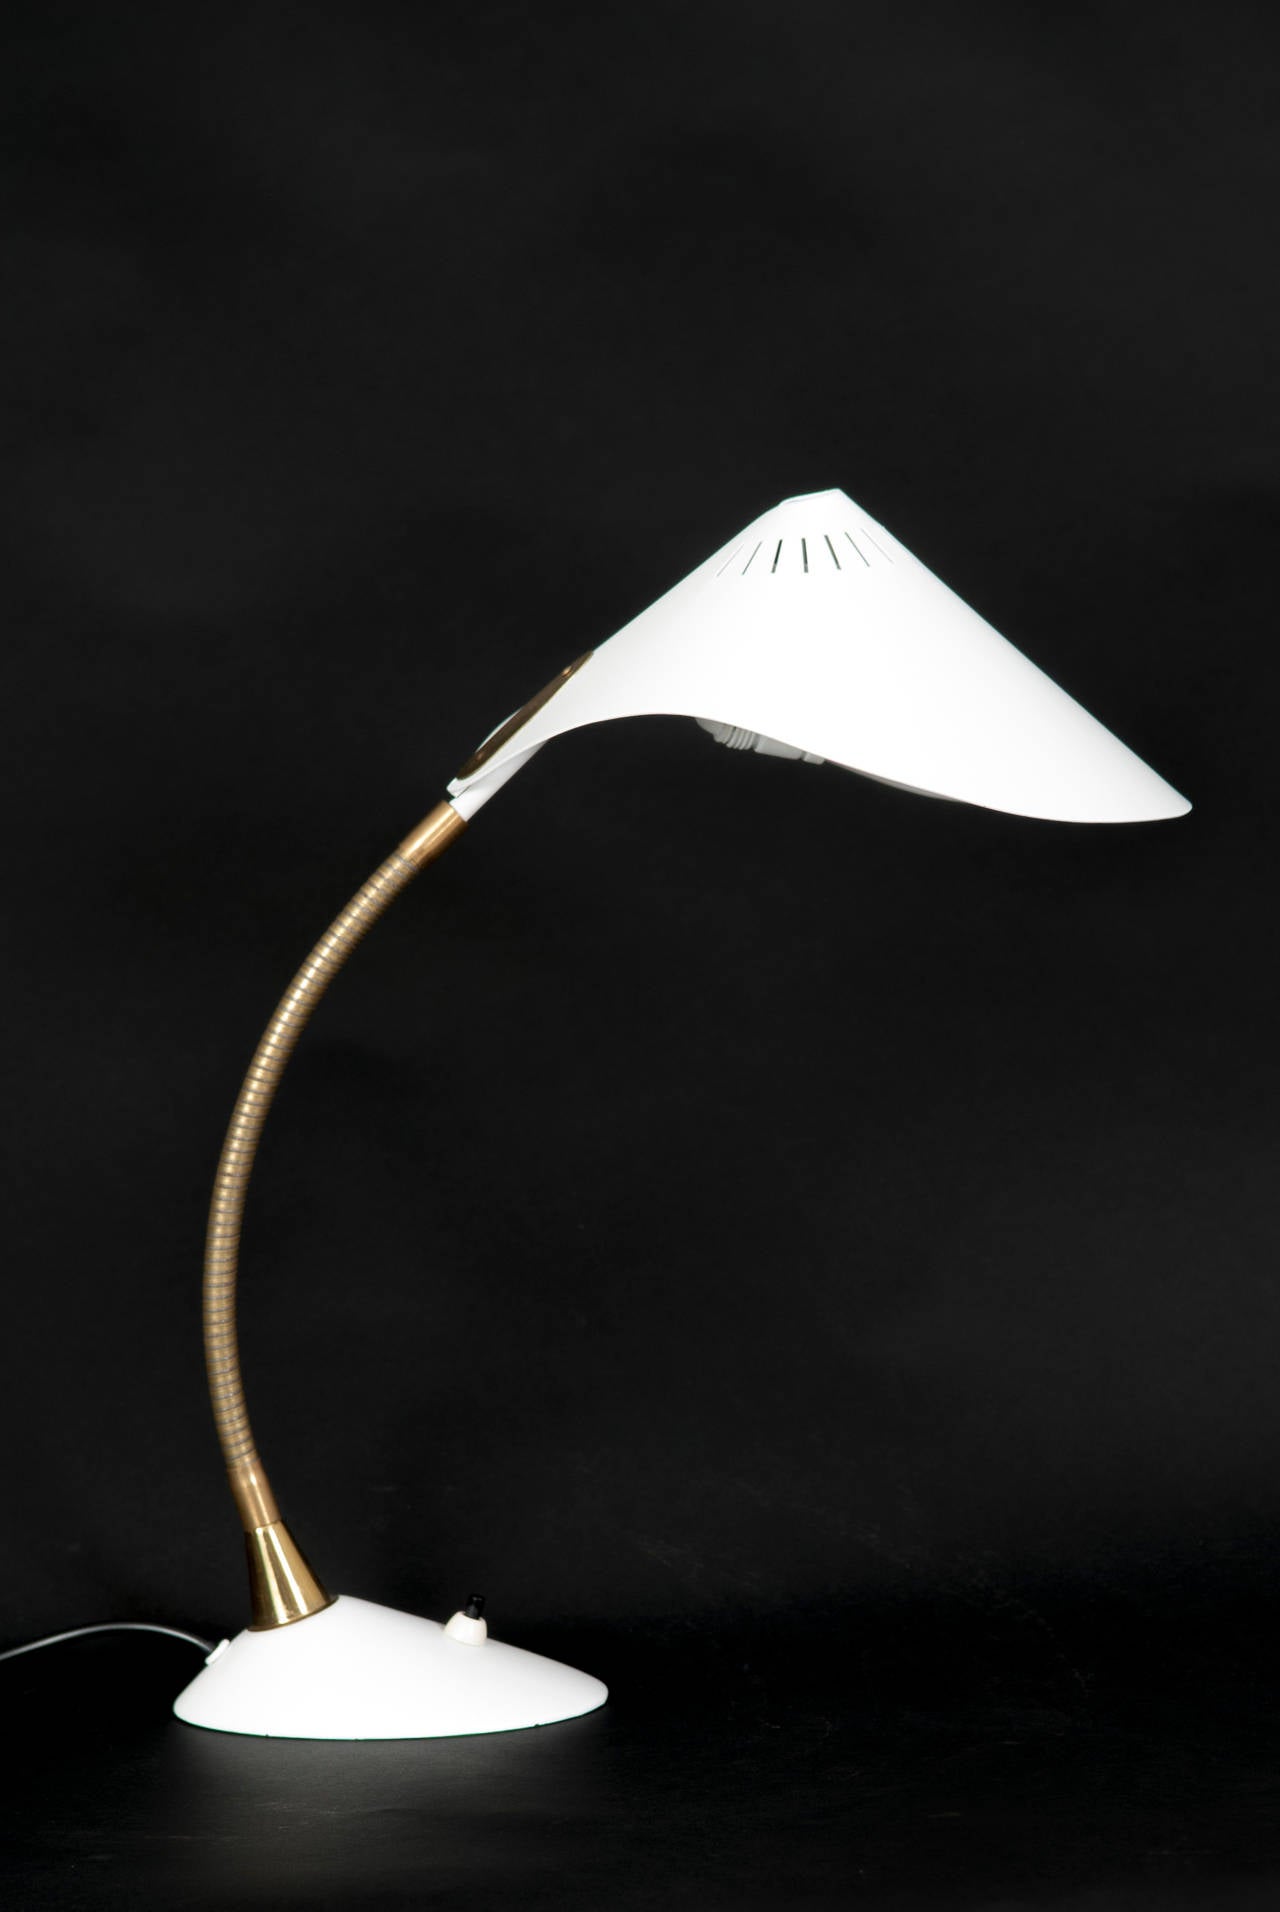 Elegant leaf shaped table lamp by Stilnovo.
Adjustable goose neck. 

Good restored condition.